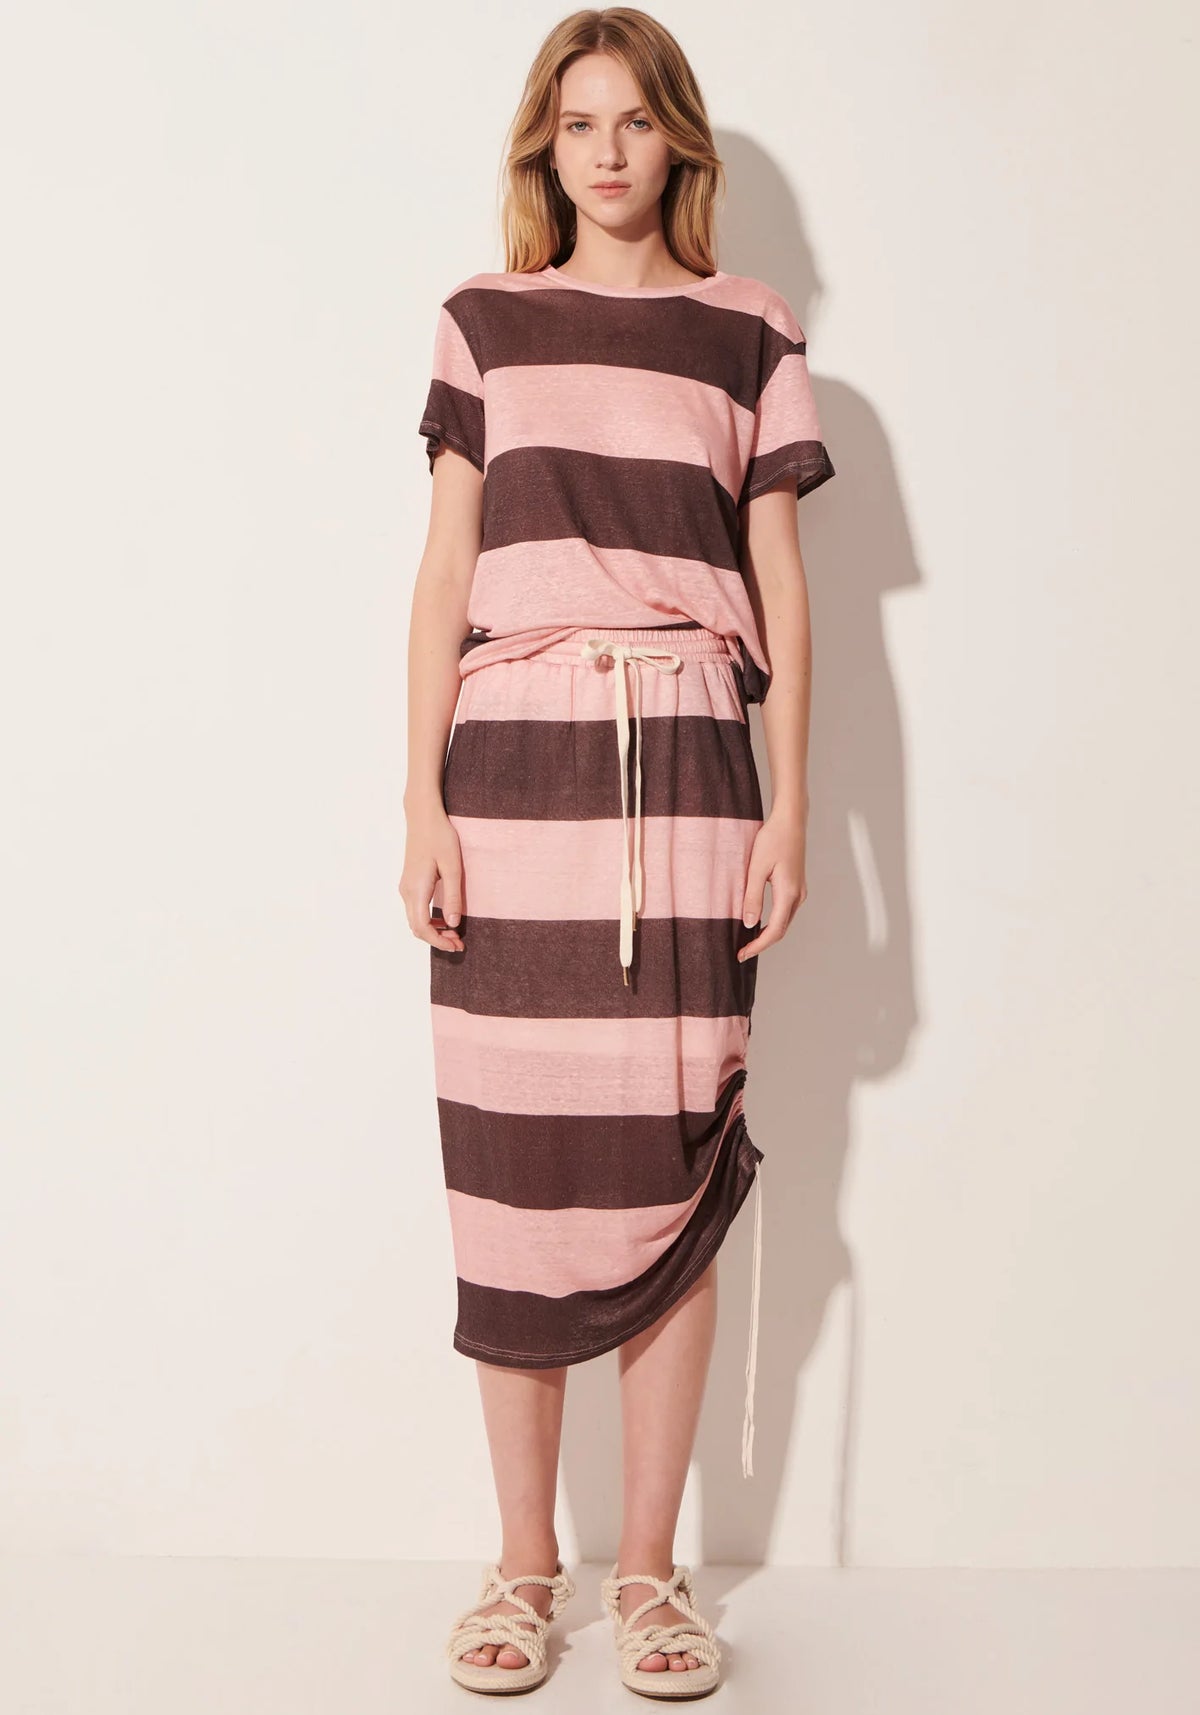 Buoy Stripe Skirt - Pink/Espresso